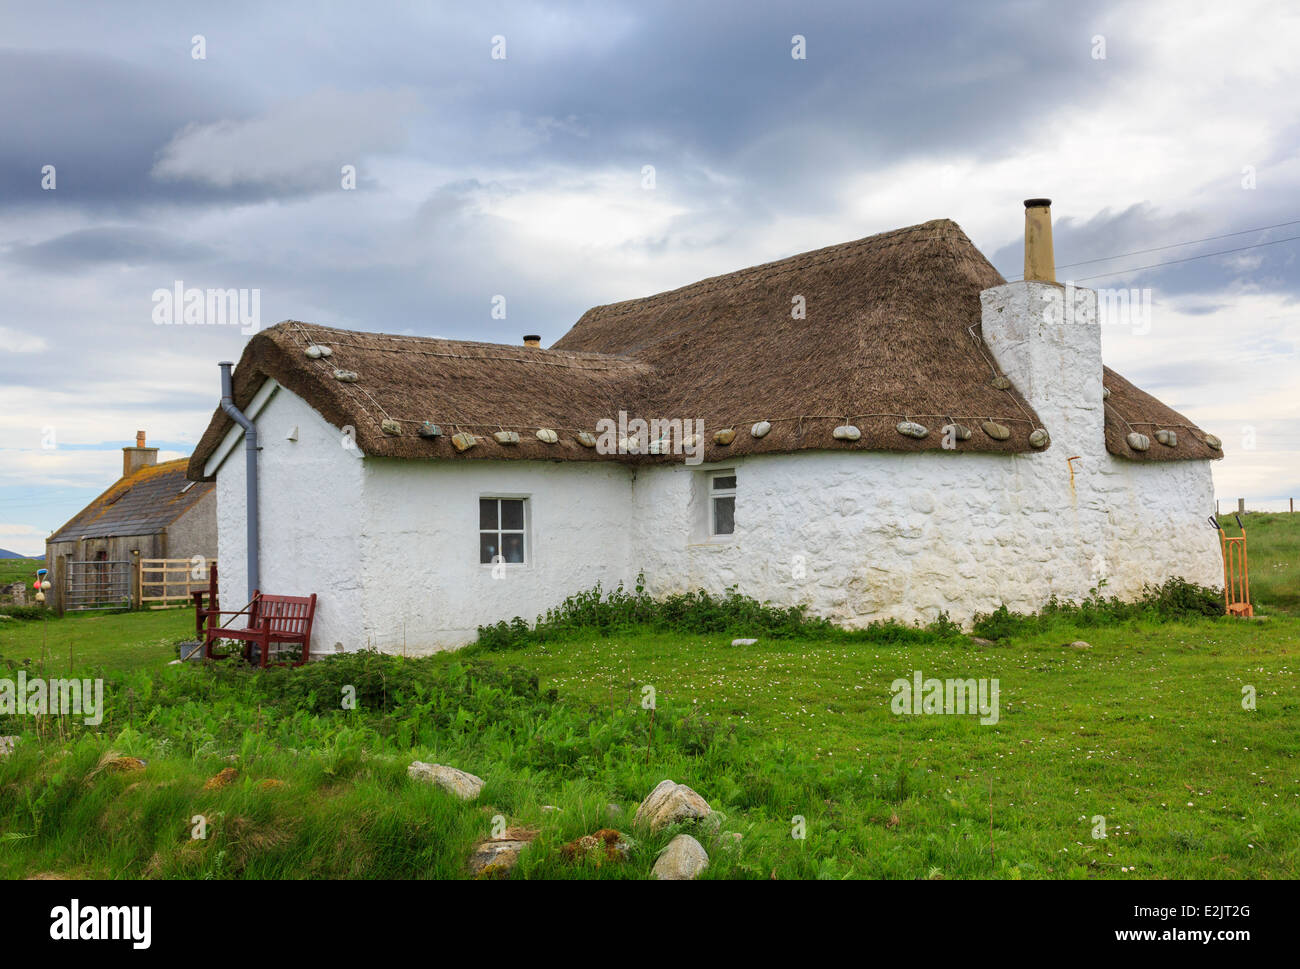 Jugendherberge in alten strohgedeckten blackhouse Cottage mit weiß getünchten Wänden. Howmore South Uist Äußere Hebriden Western Isles Schottland Großbritannien Großbritannien Stockfoto